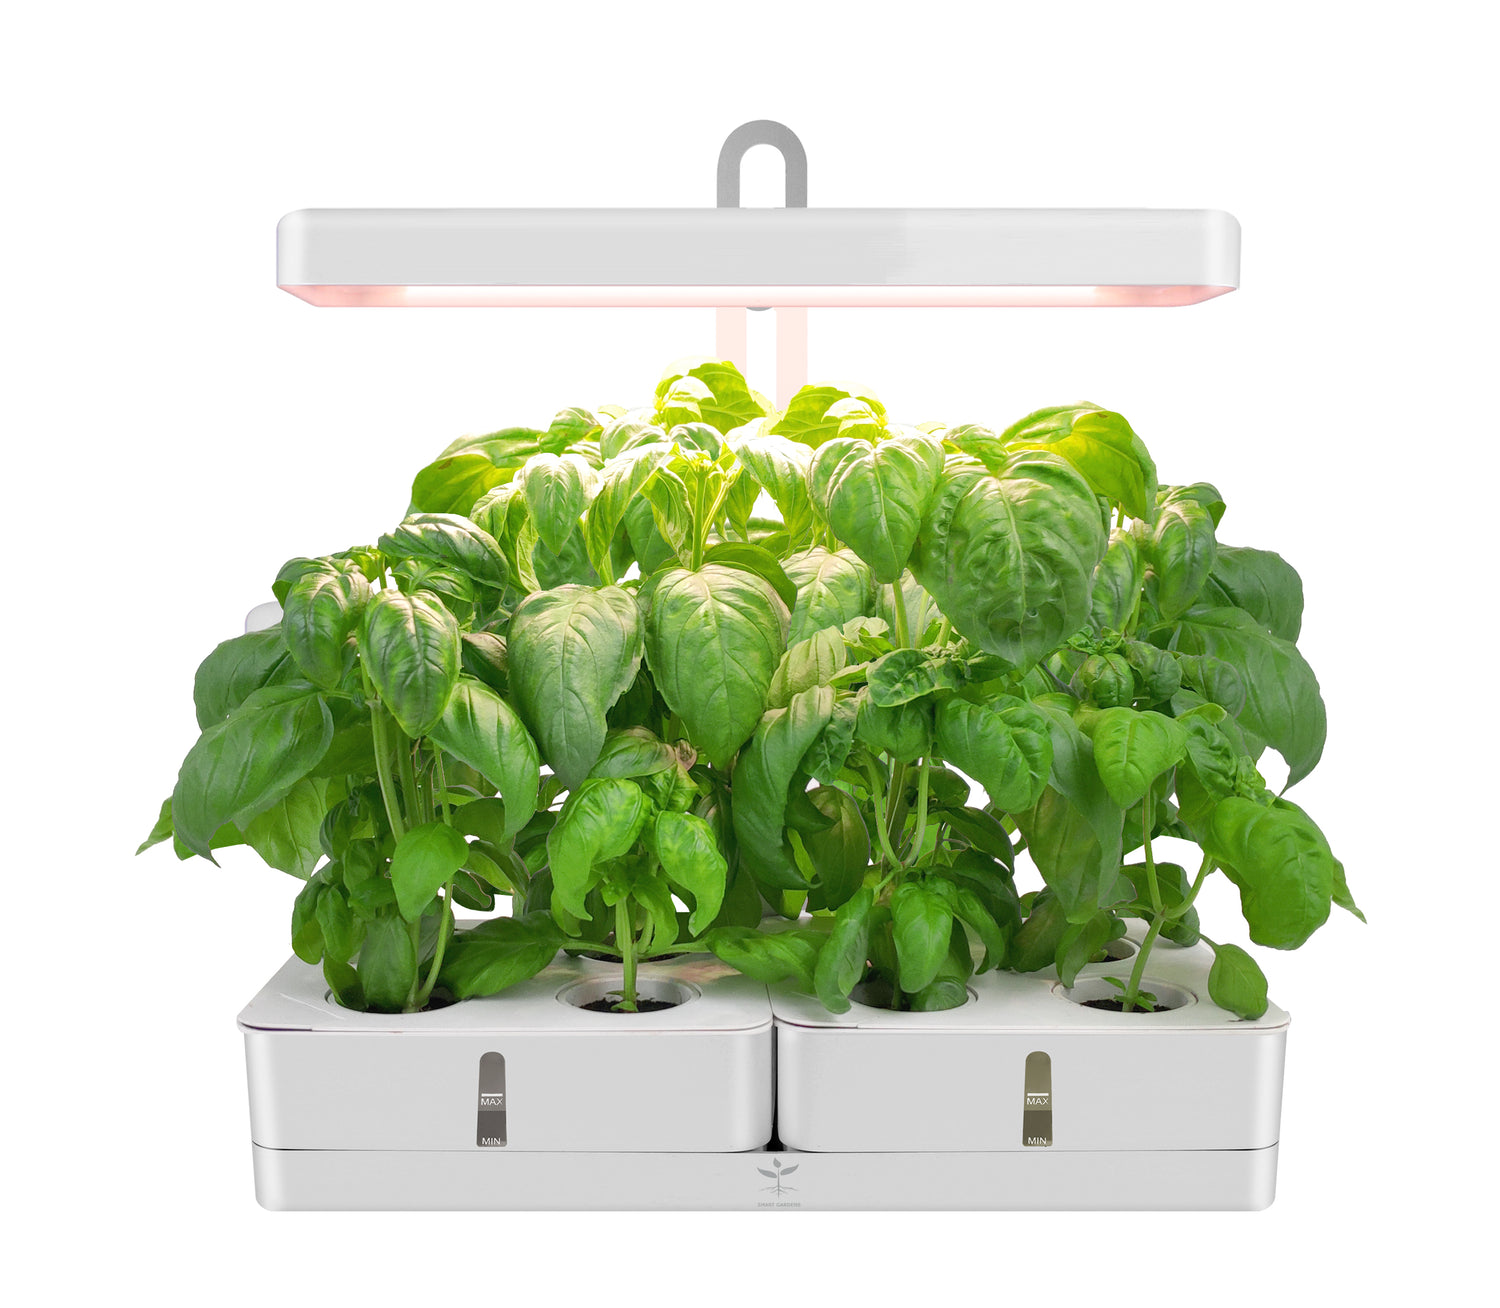 EasyHarvest Smart Garden Kit including Smart Soil Pods